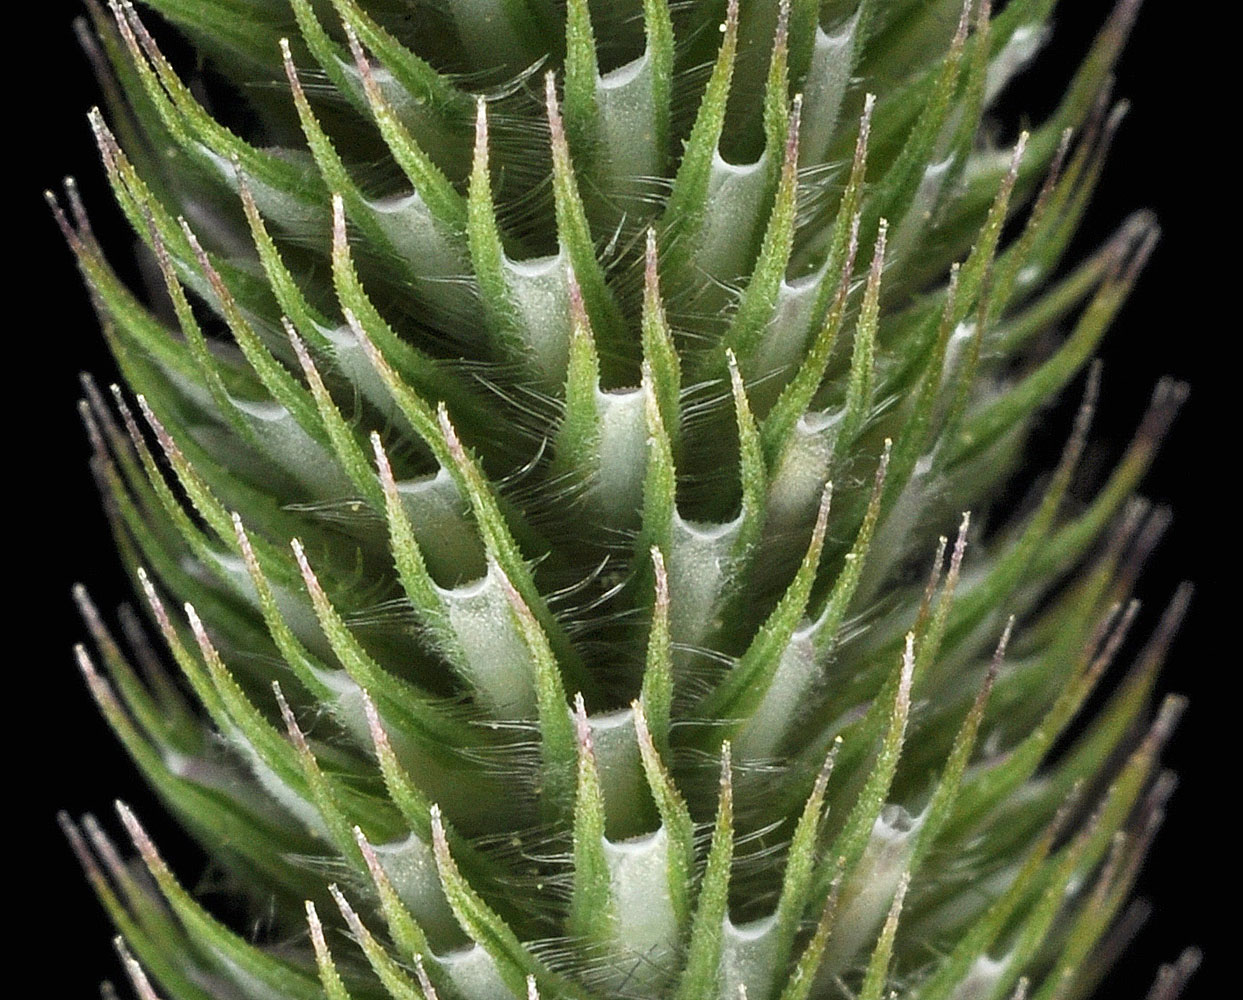 Flora of Eastern Washington Image: Phleum pratense